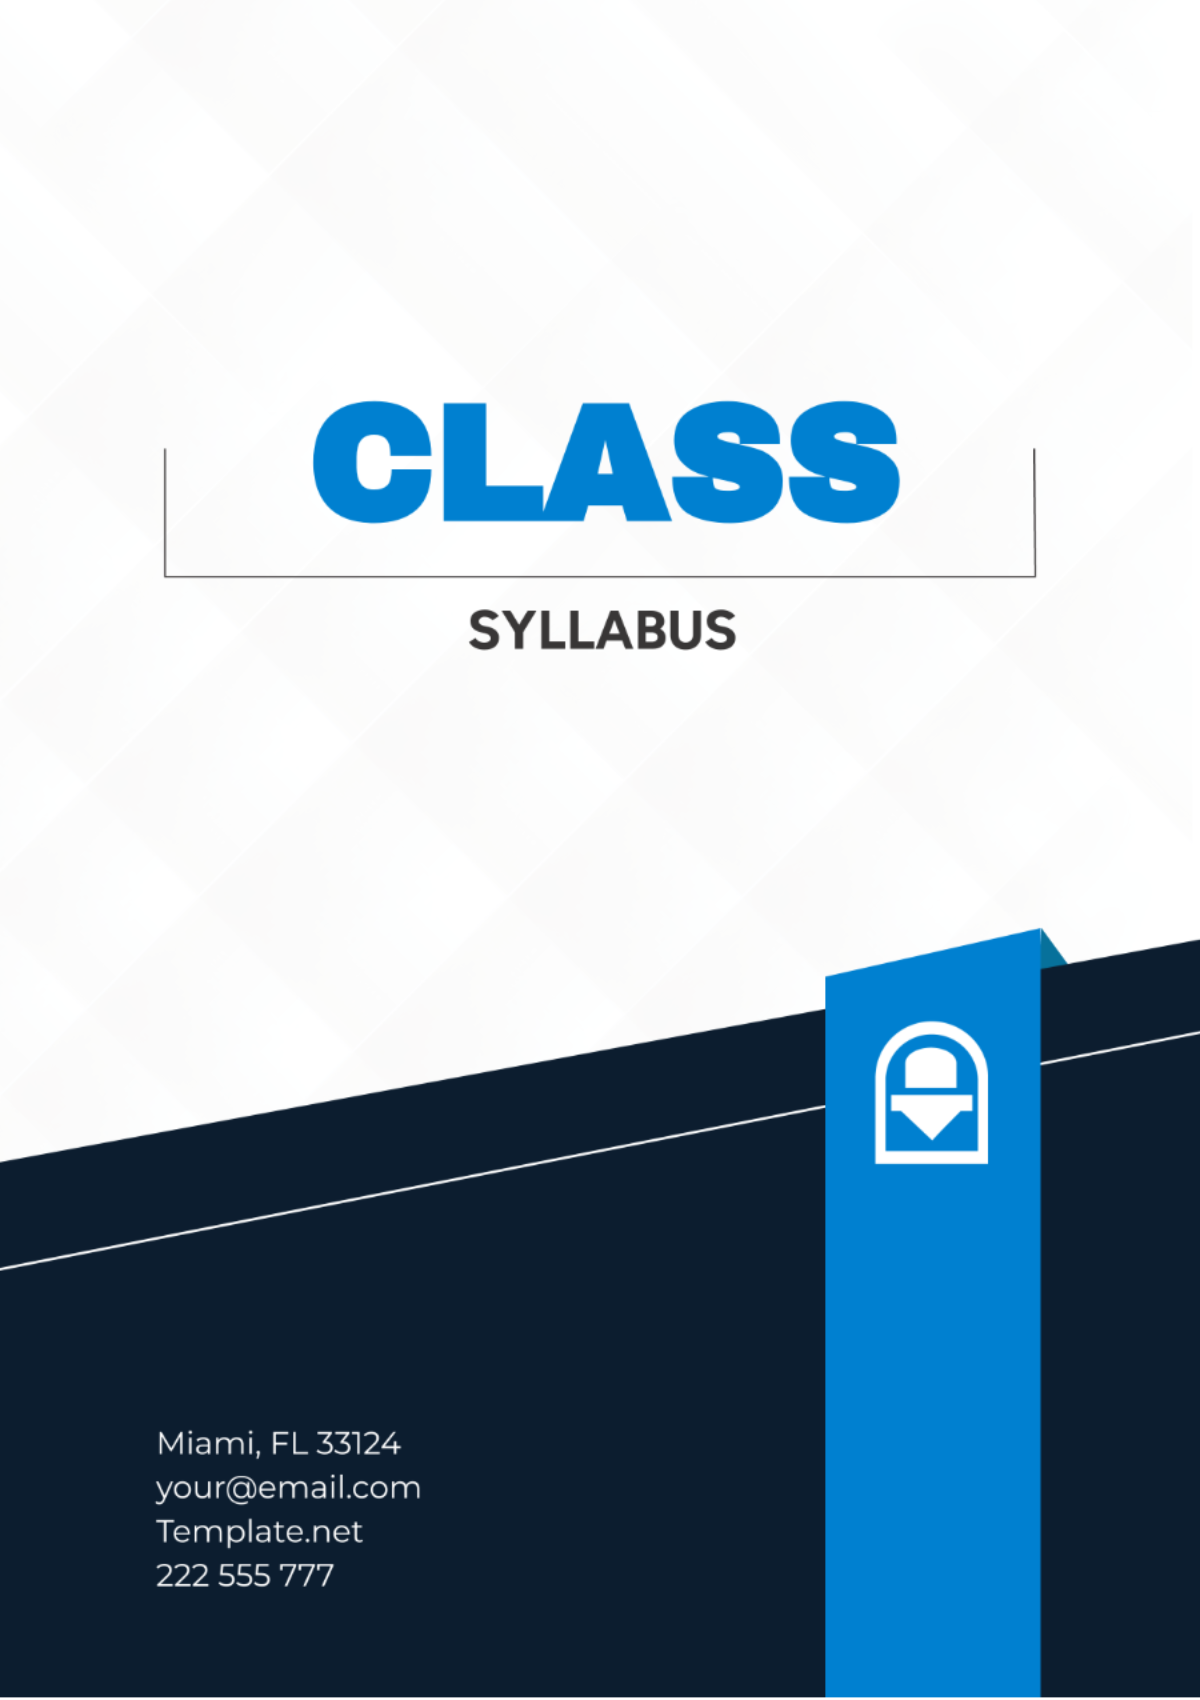 Class Syllabus Template